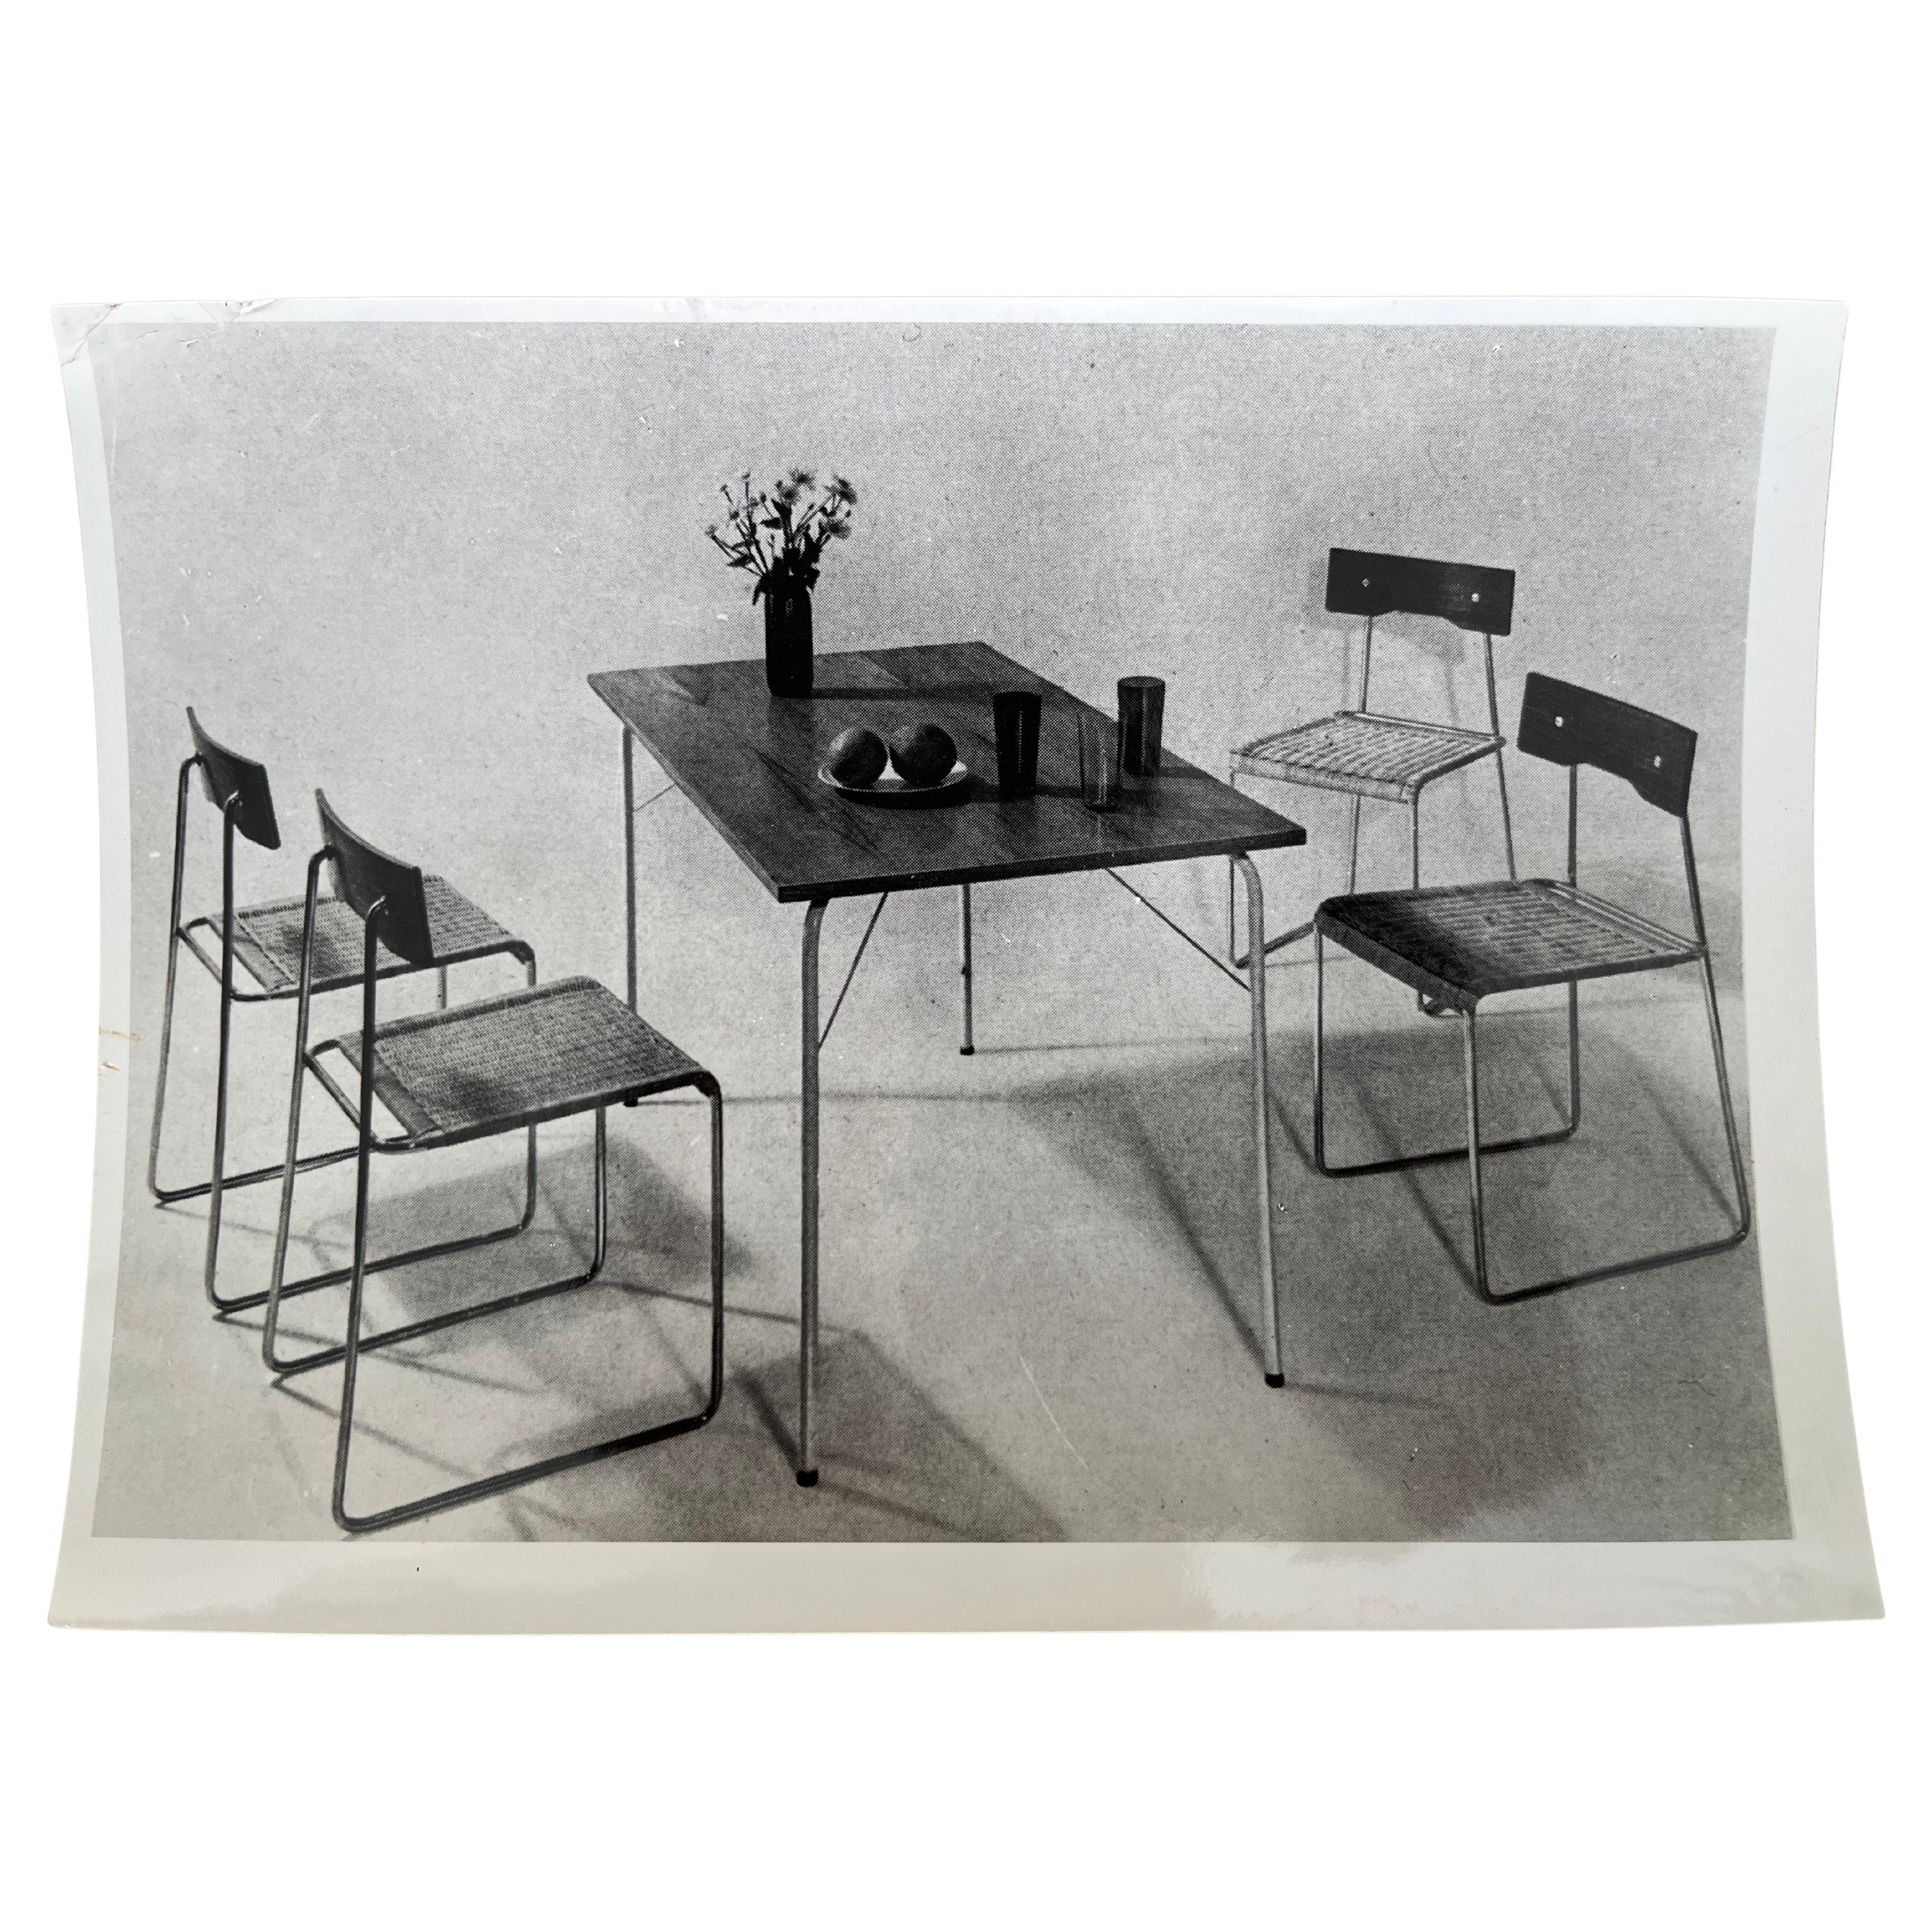 Original Photo of furniture by Helmuth Magga - Deutsche werkstätten / 1957